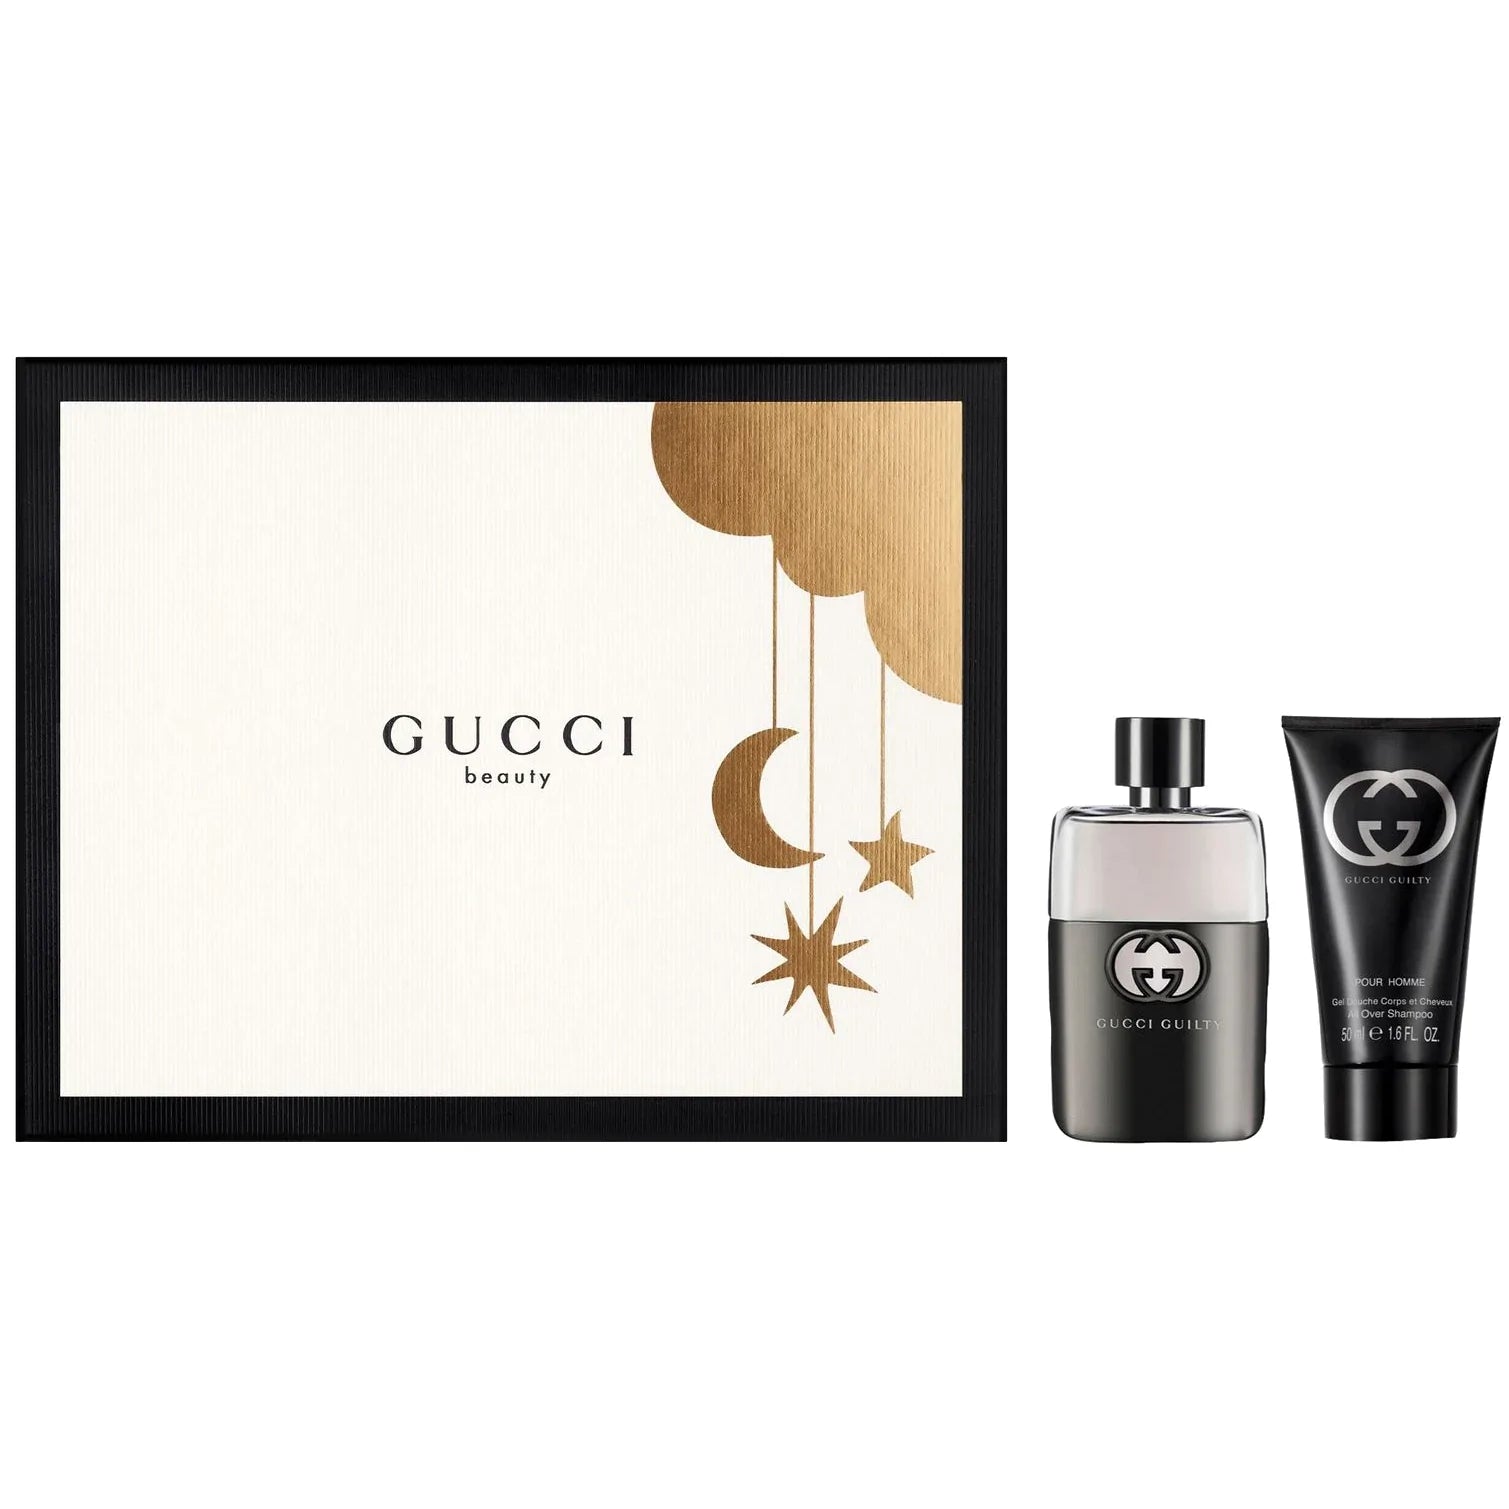 Fragrance Gucci Homme – Flor Set Gift Guilty Eau Toilette Pour de De